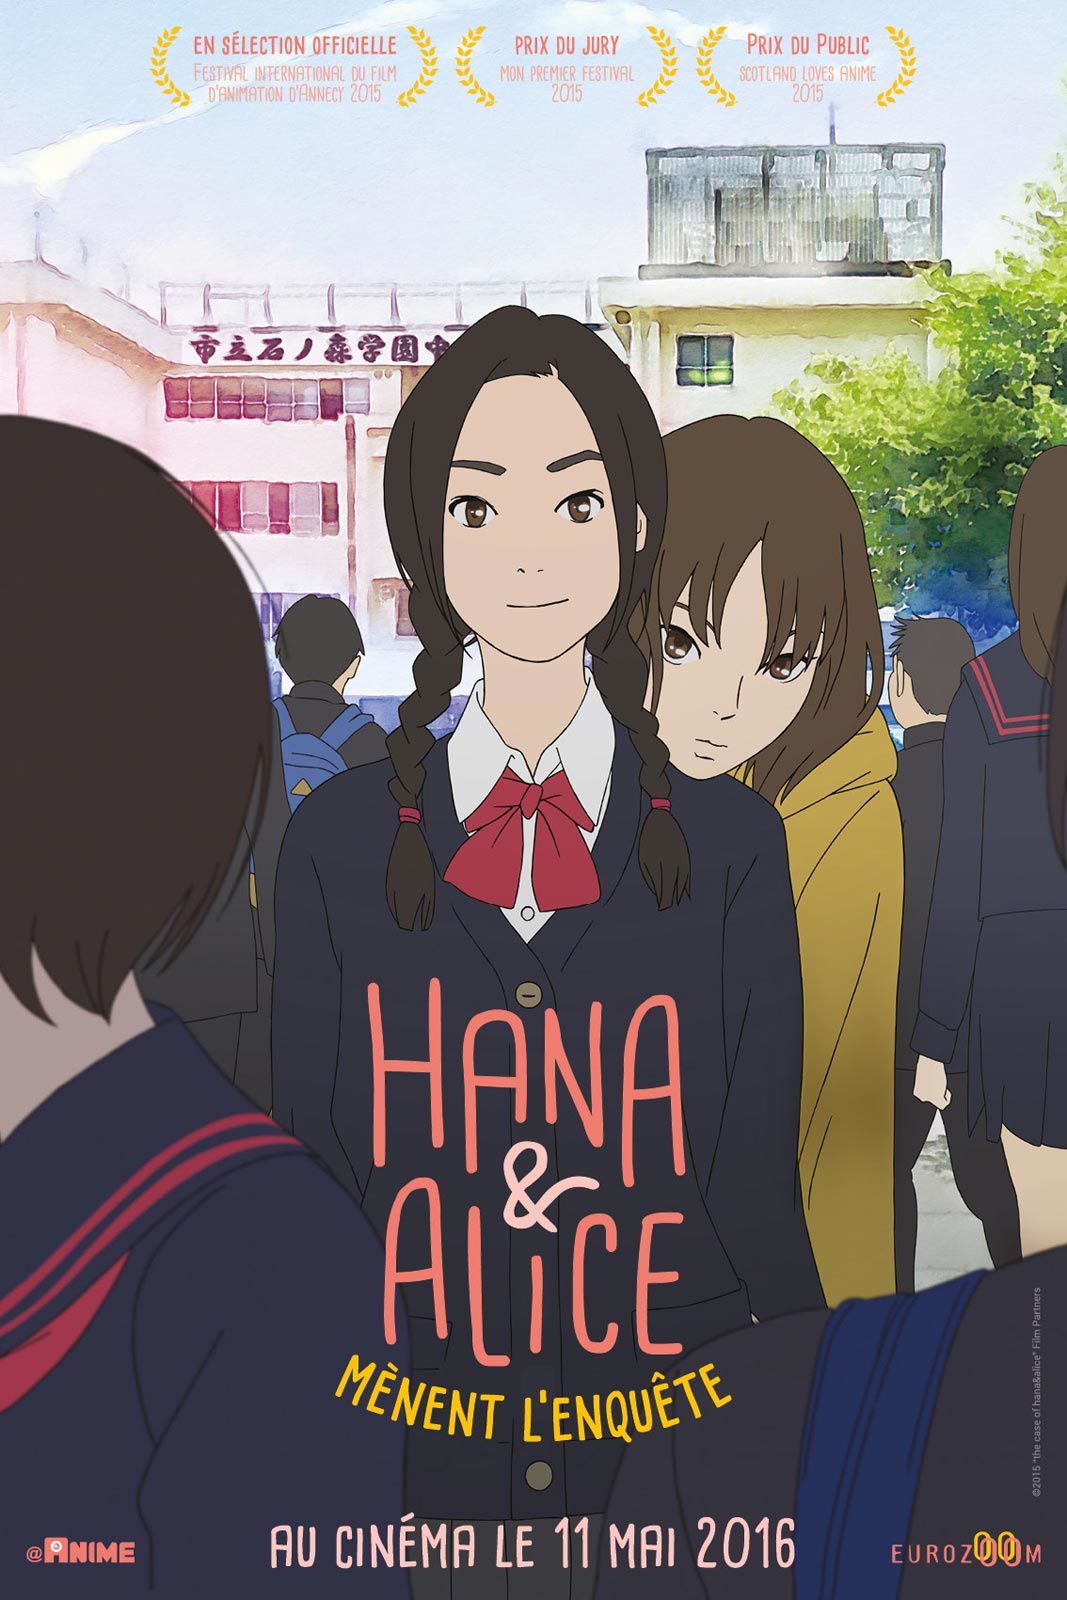 Hana et Alice mènent l'enquête (BANDE ANNONCE VOST + 4 EXTRAITS VF) de Shunji Iwai - Le 11 mai 2016 au cinéma